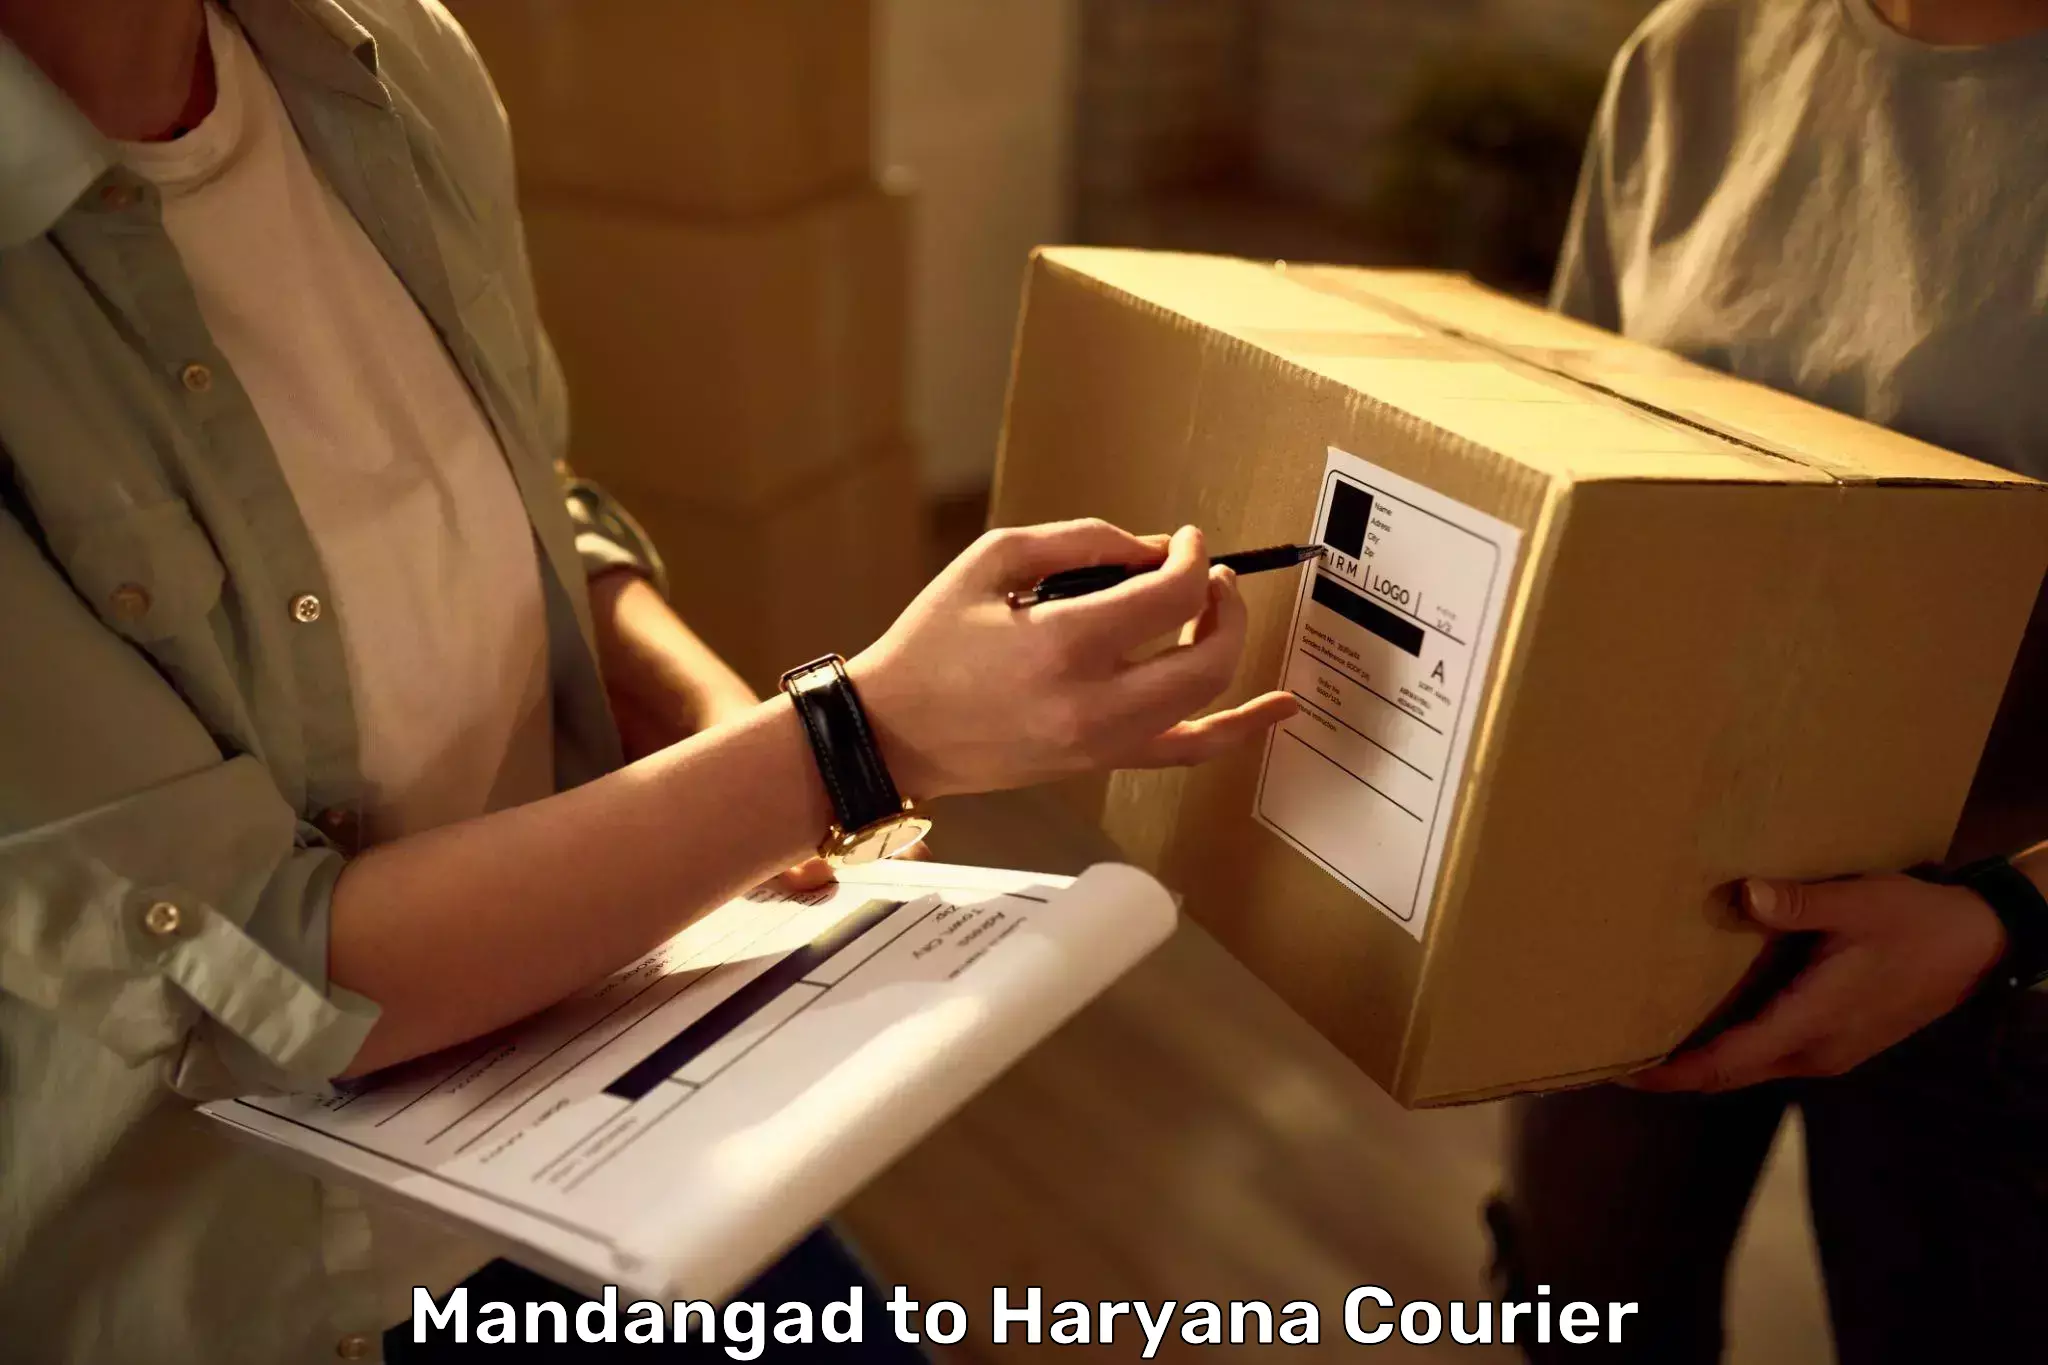 Electronic items luggage shipping Mandangad to IIIT Sonepat